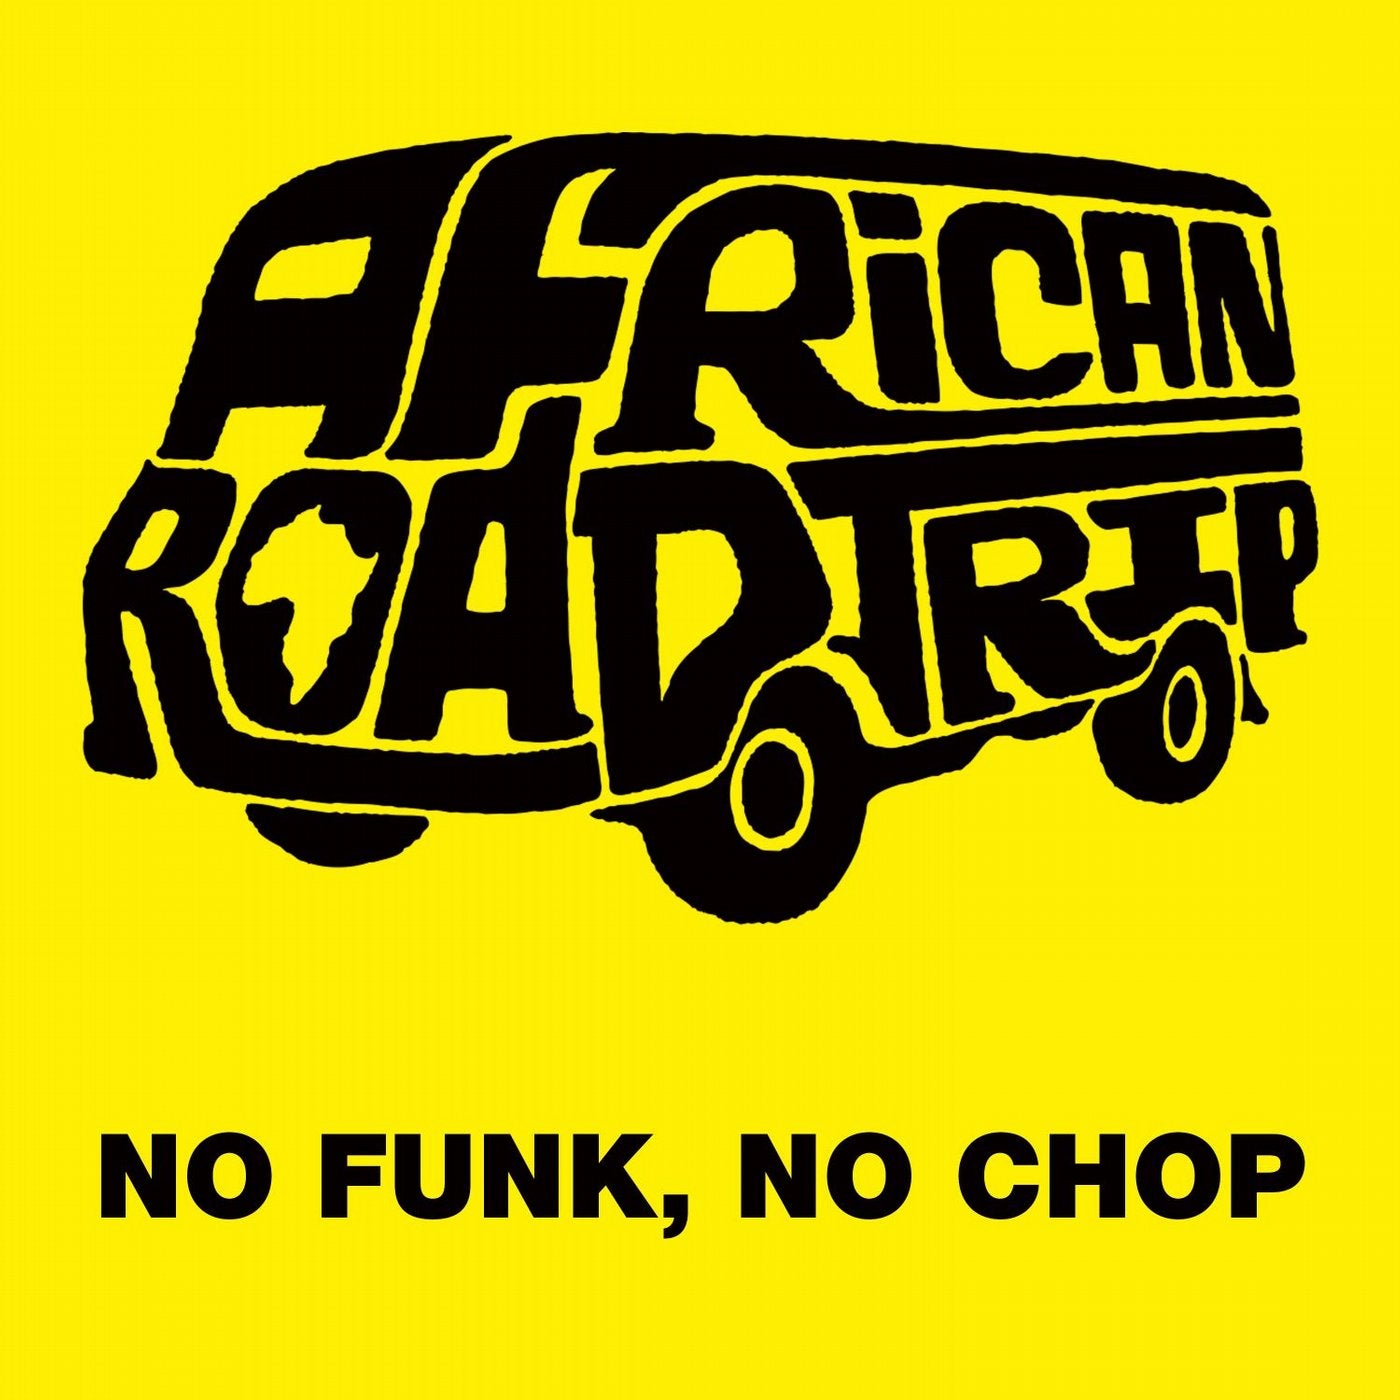 No Funk, No Chop